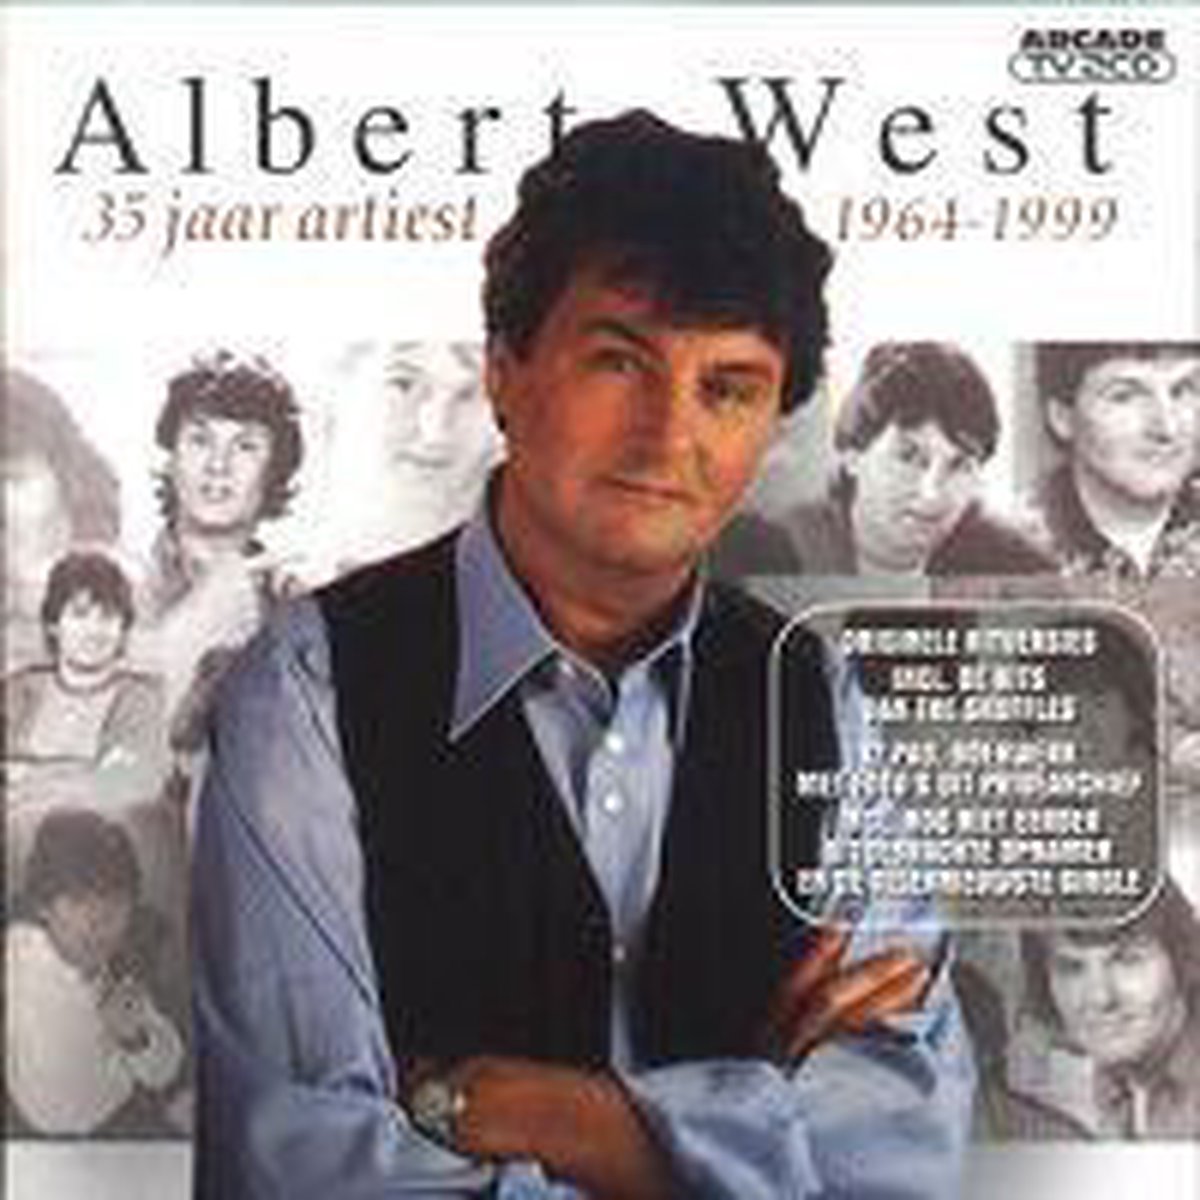 35 Jaar artiest 1964-1999 - Albert West